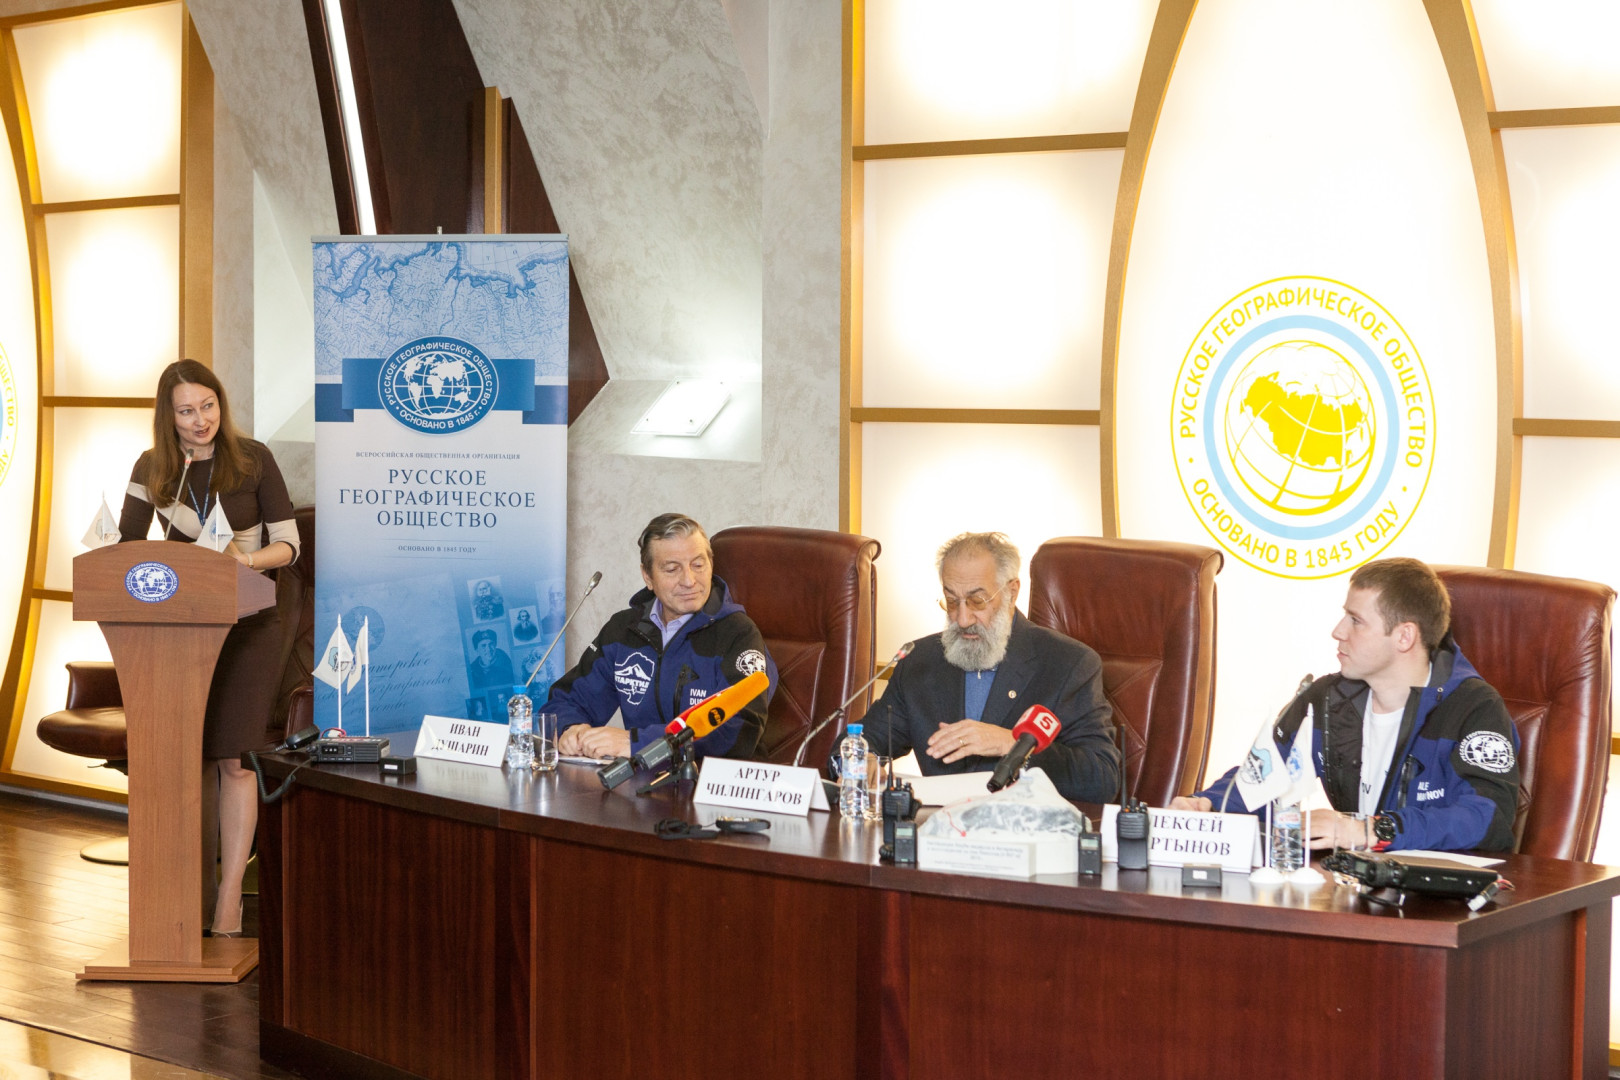 Пресс-конференция по случаю старта экспедиции российских предпринимателей на Южный полюс